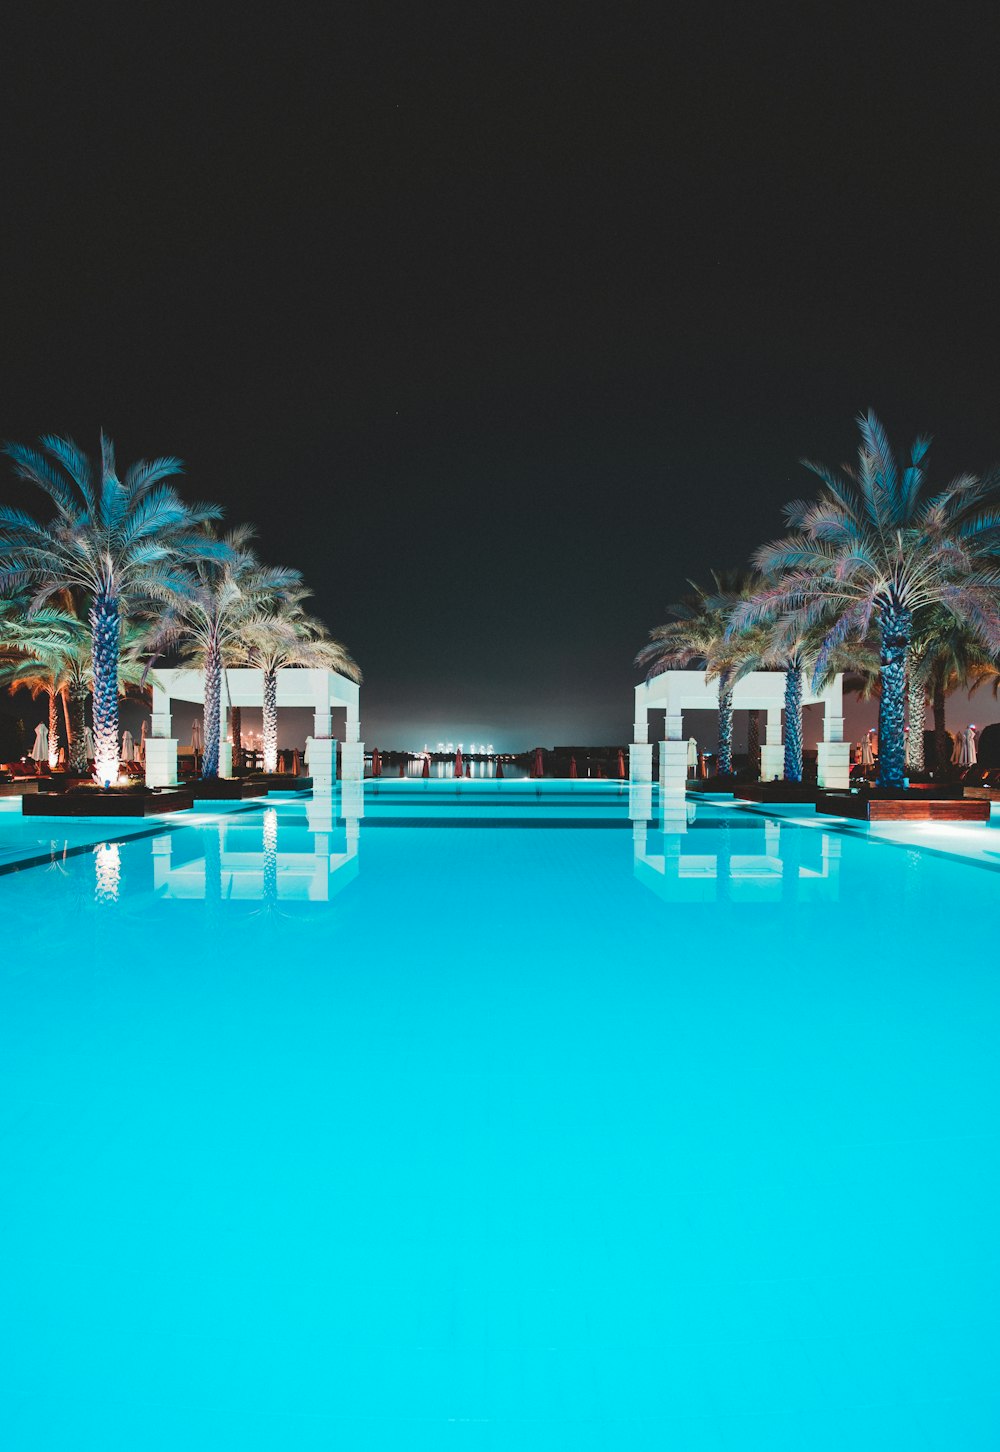 piscina tra palme verdi di notte